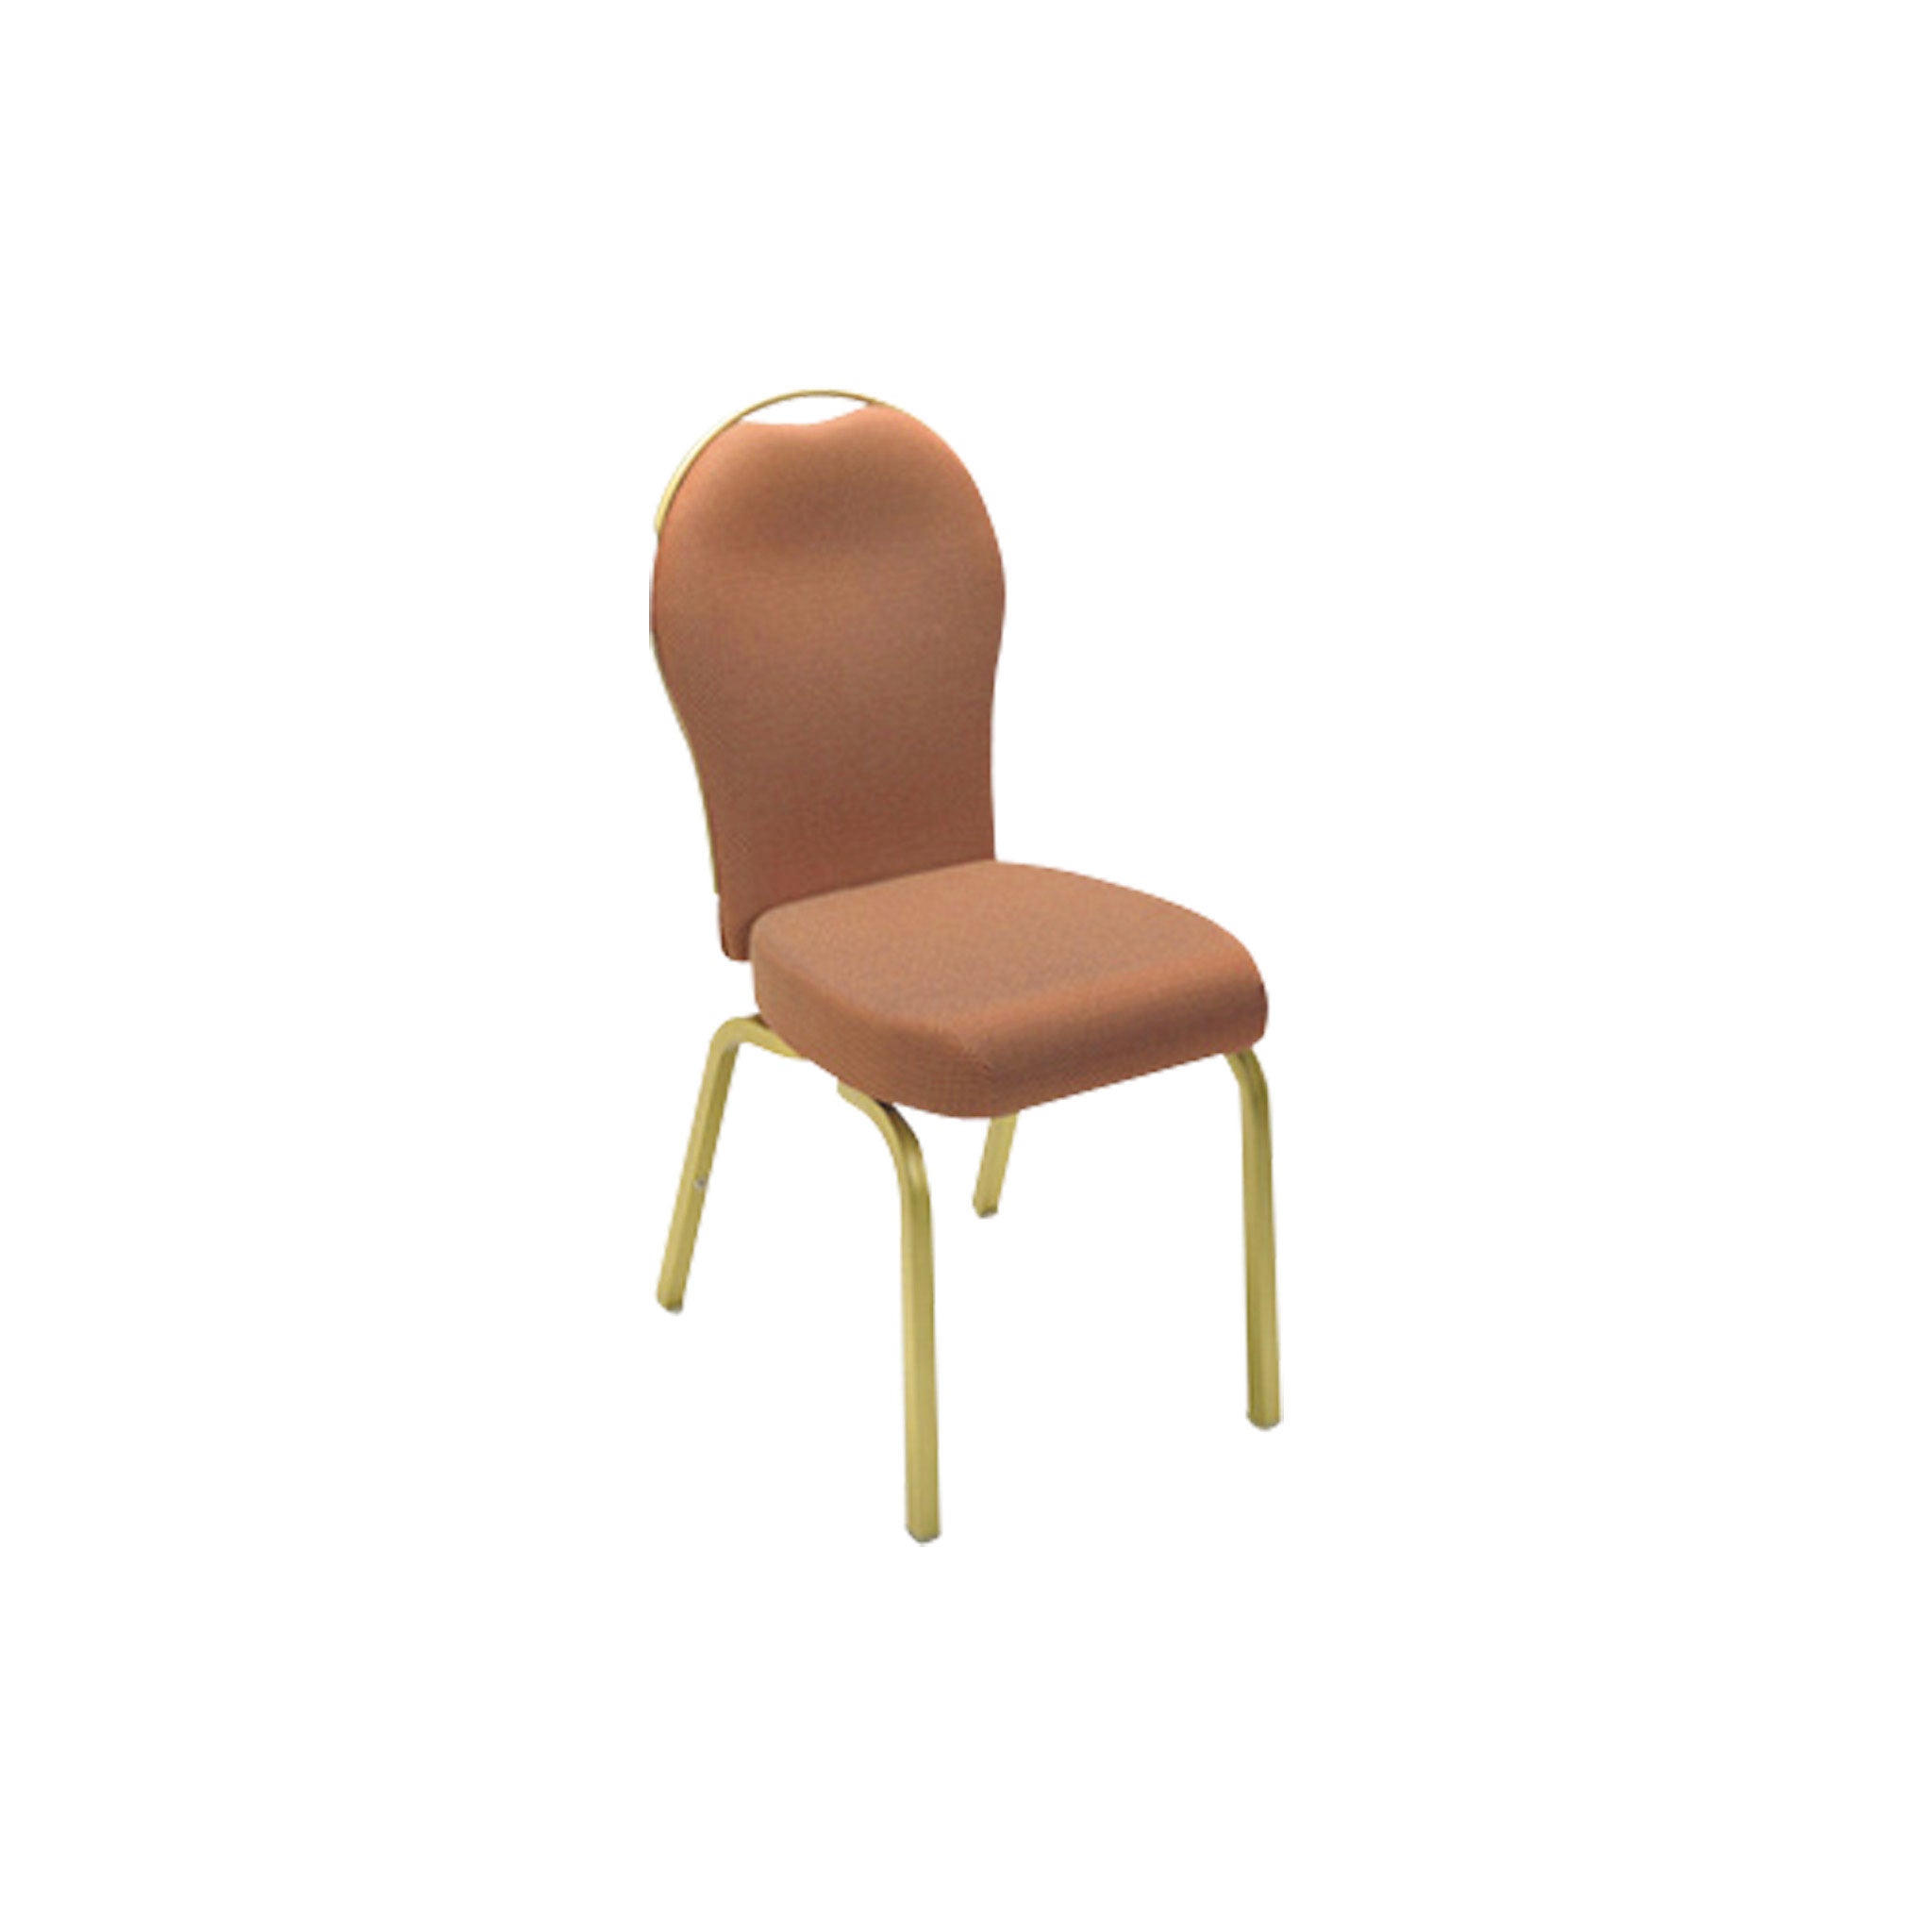 Banquet Chair – New Tech Furniture